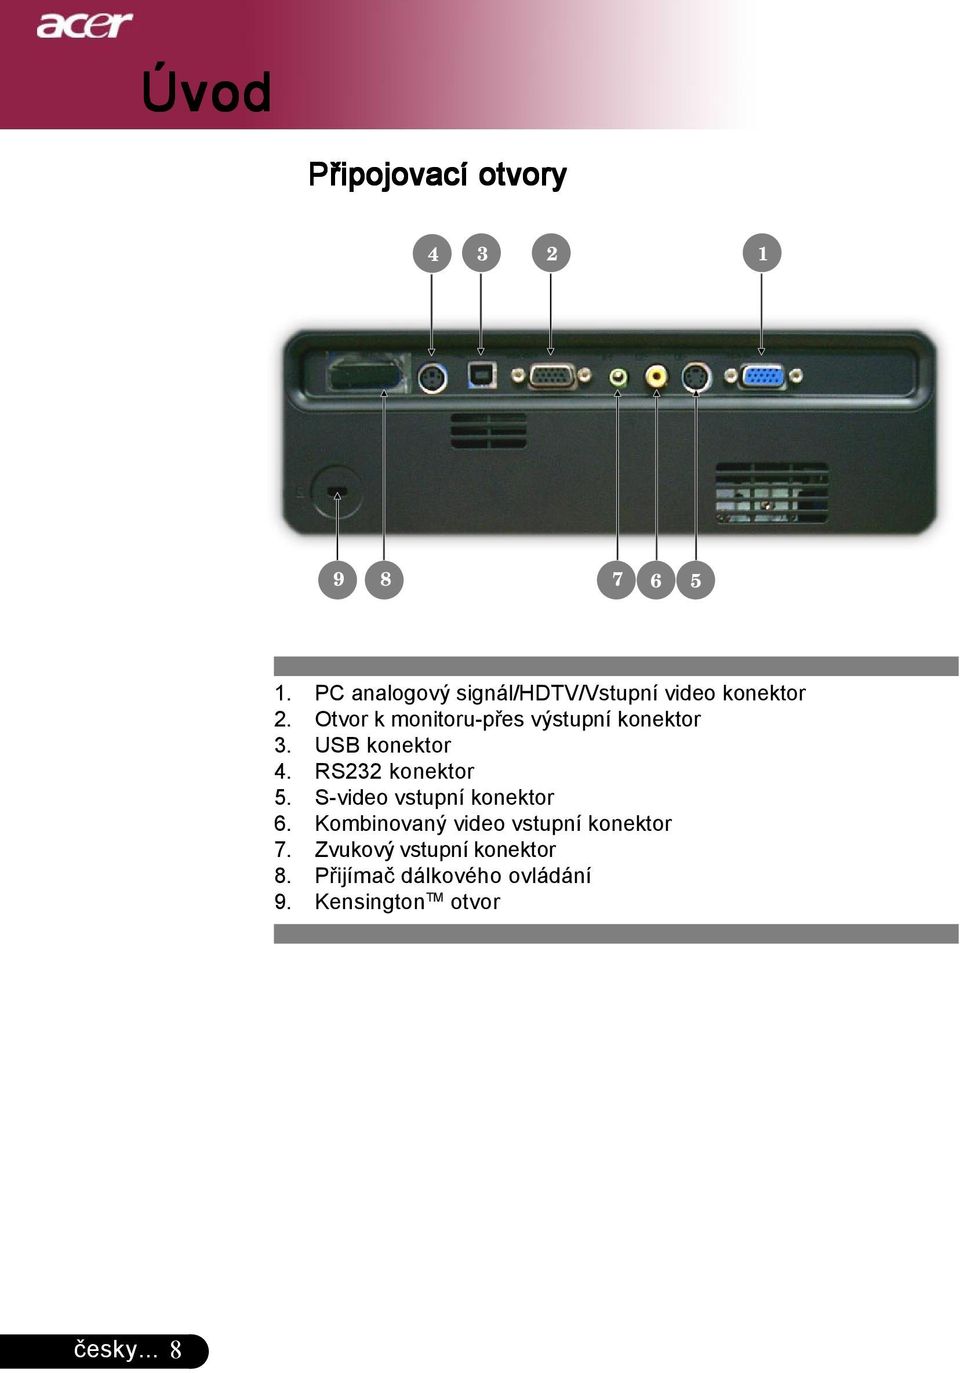 Otvor k monitoru-přes výstupní konektor 3. USB konektor 4. RS232 konektor 5.